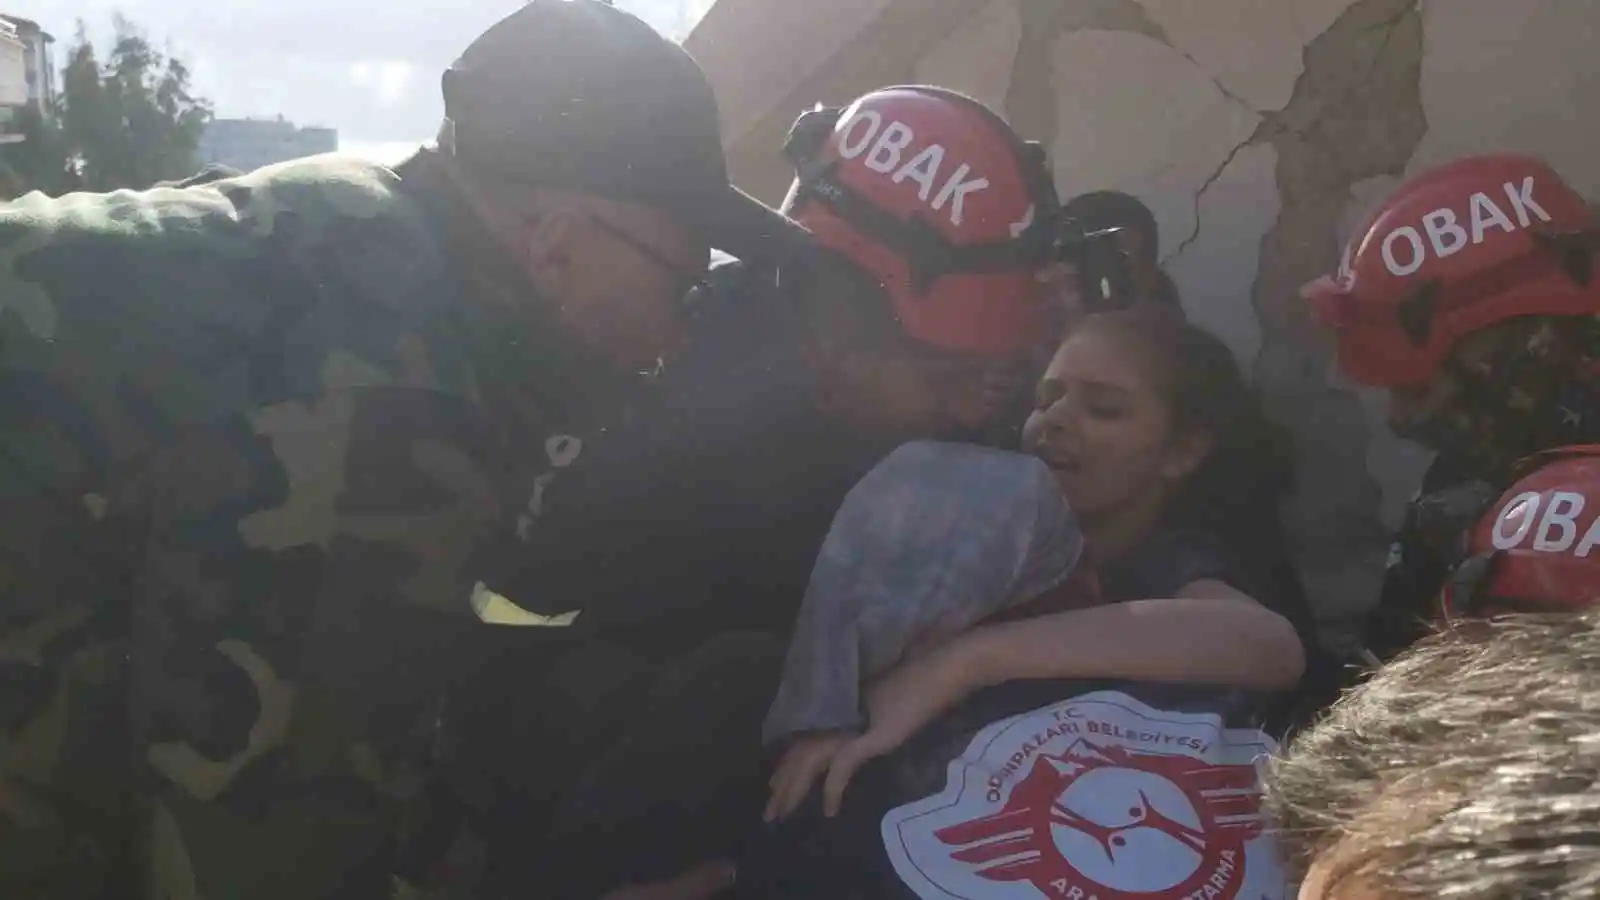 Eskişehir’den giden arama kurtarma ekipleri Antakya’da enkaz altından 2 kişiyi kurtardı
